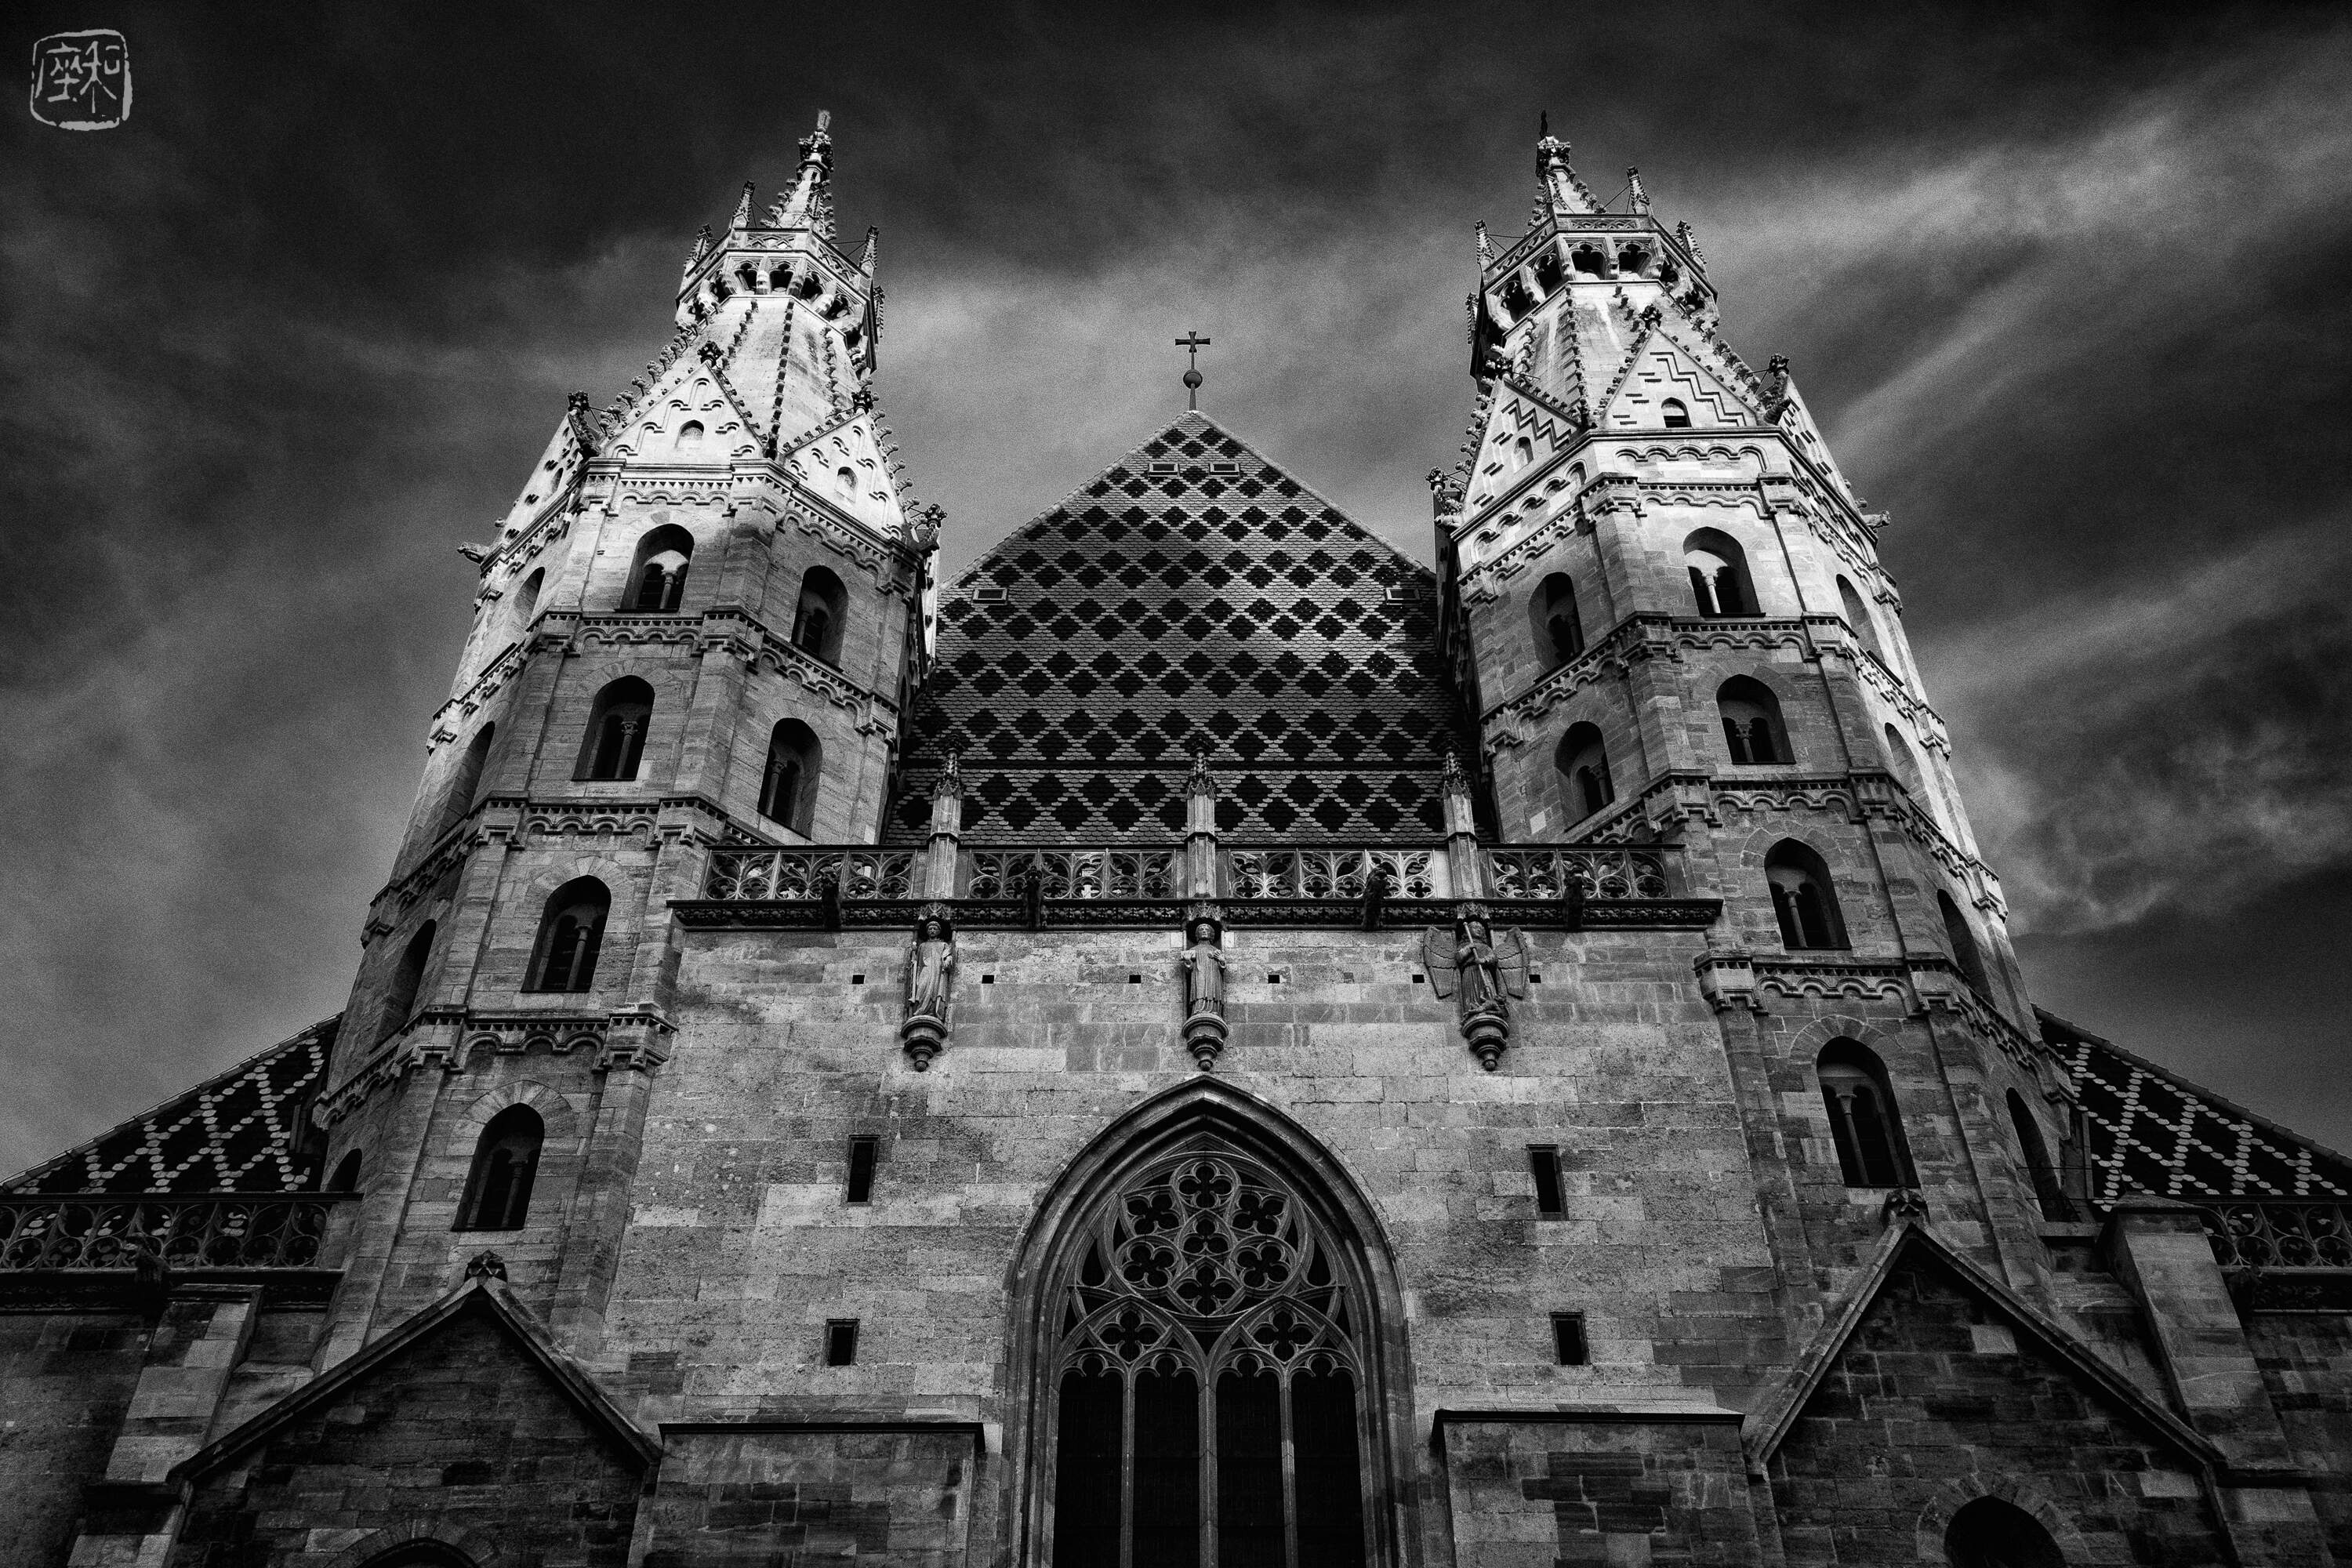 St. Stephen's Cathedral / Vienna / Austria, 2018/08